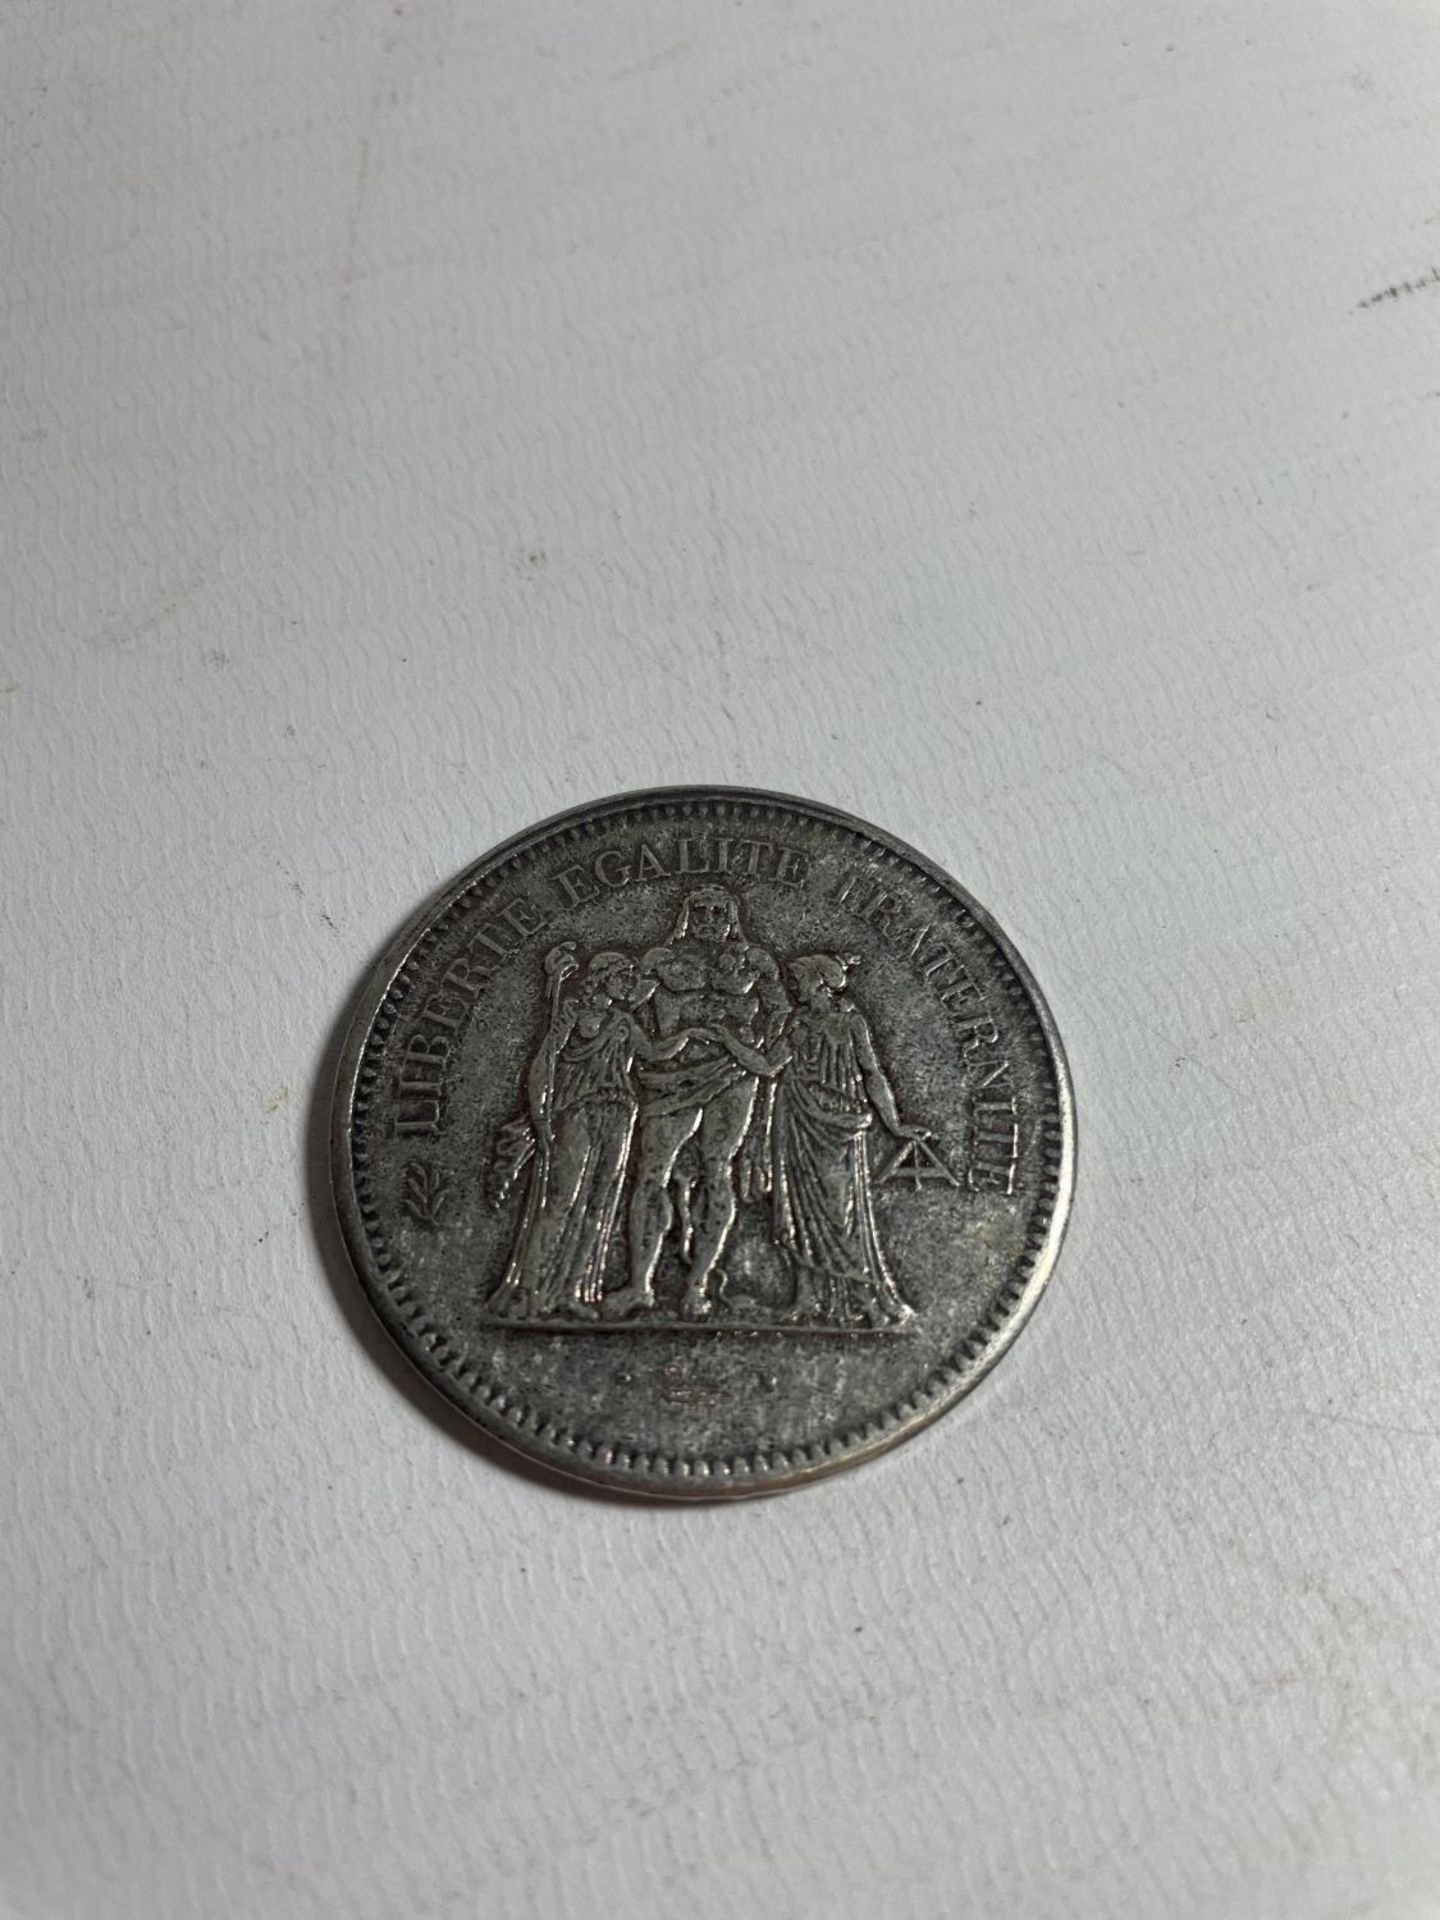 FRANCE , 1876 50 FRANC SILVER COIN - Bild 2 aus 3